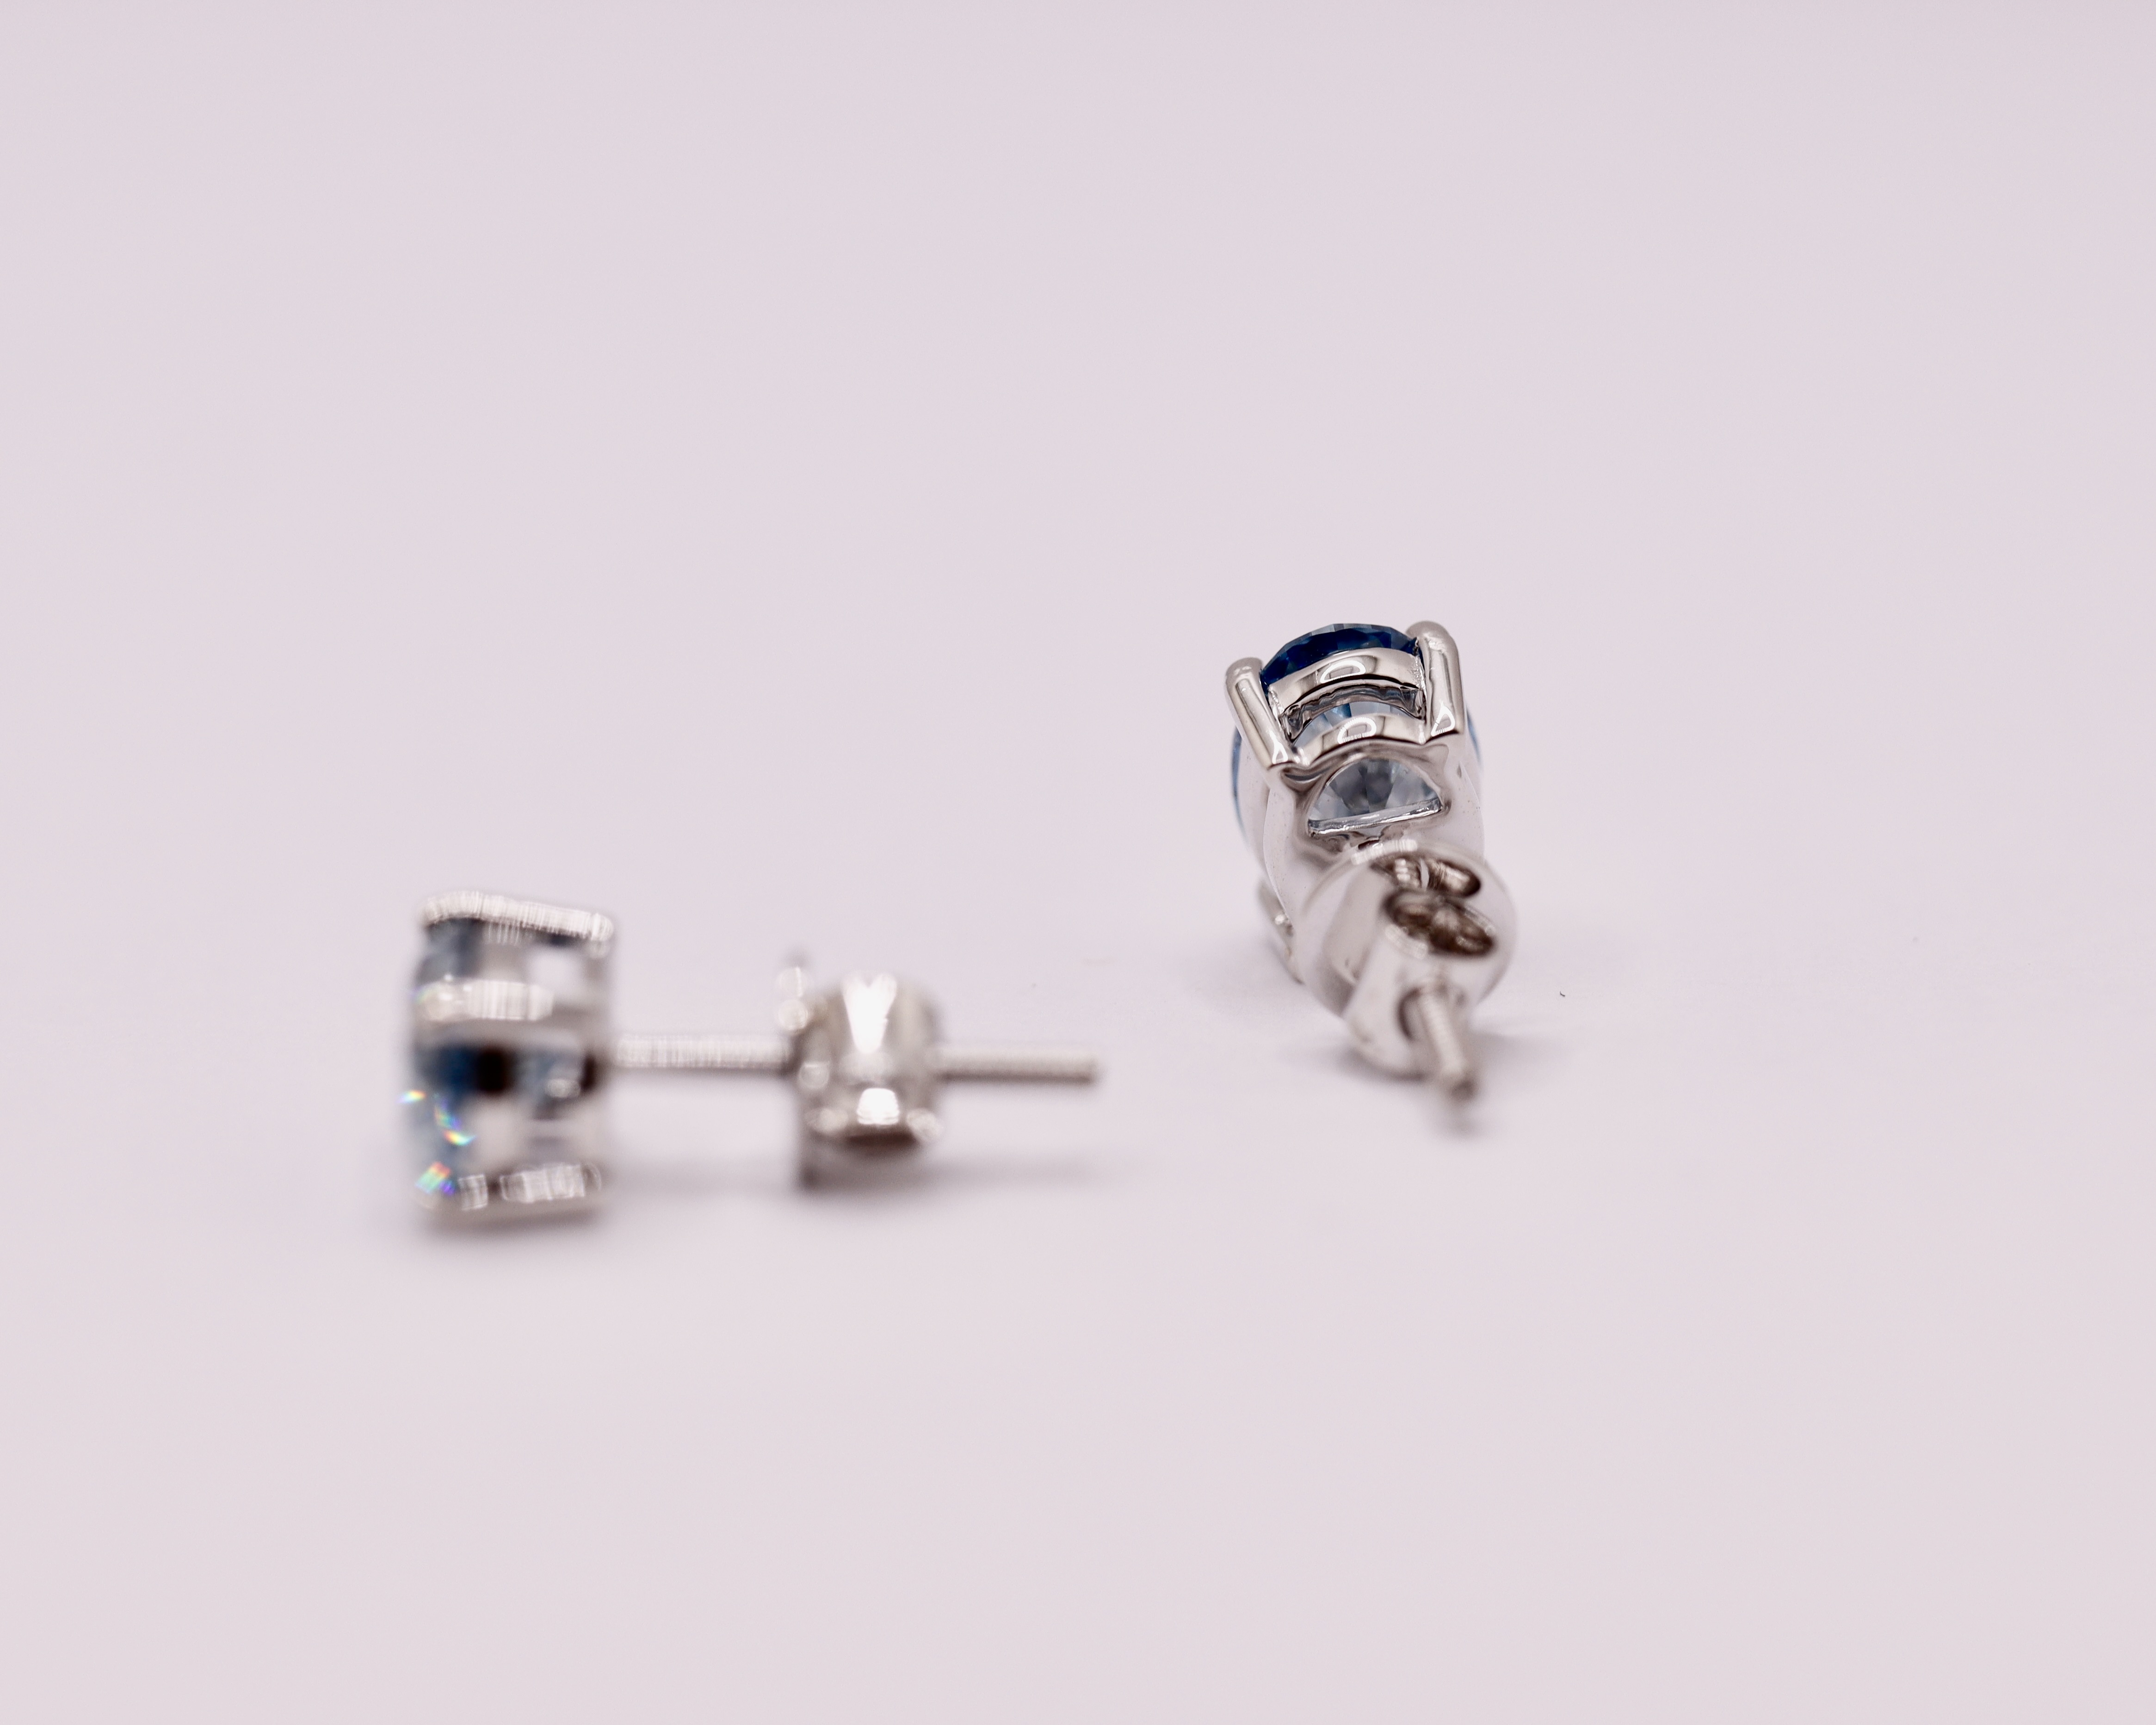 Fancy Blue Oval Cut 2.25 Carat Diamond 18Kt White Gold Earring Set -VS1 Clarity - Image 4 of 13